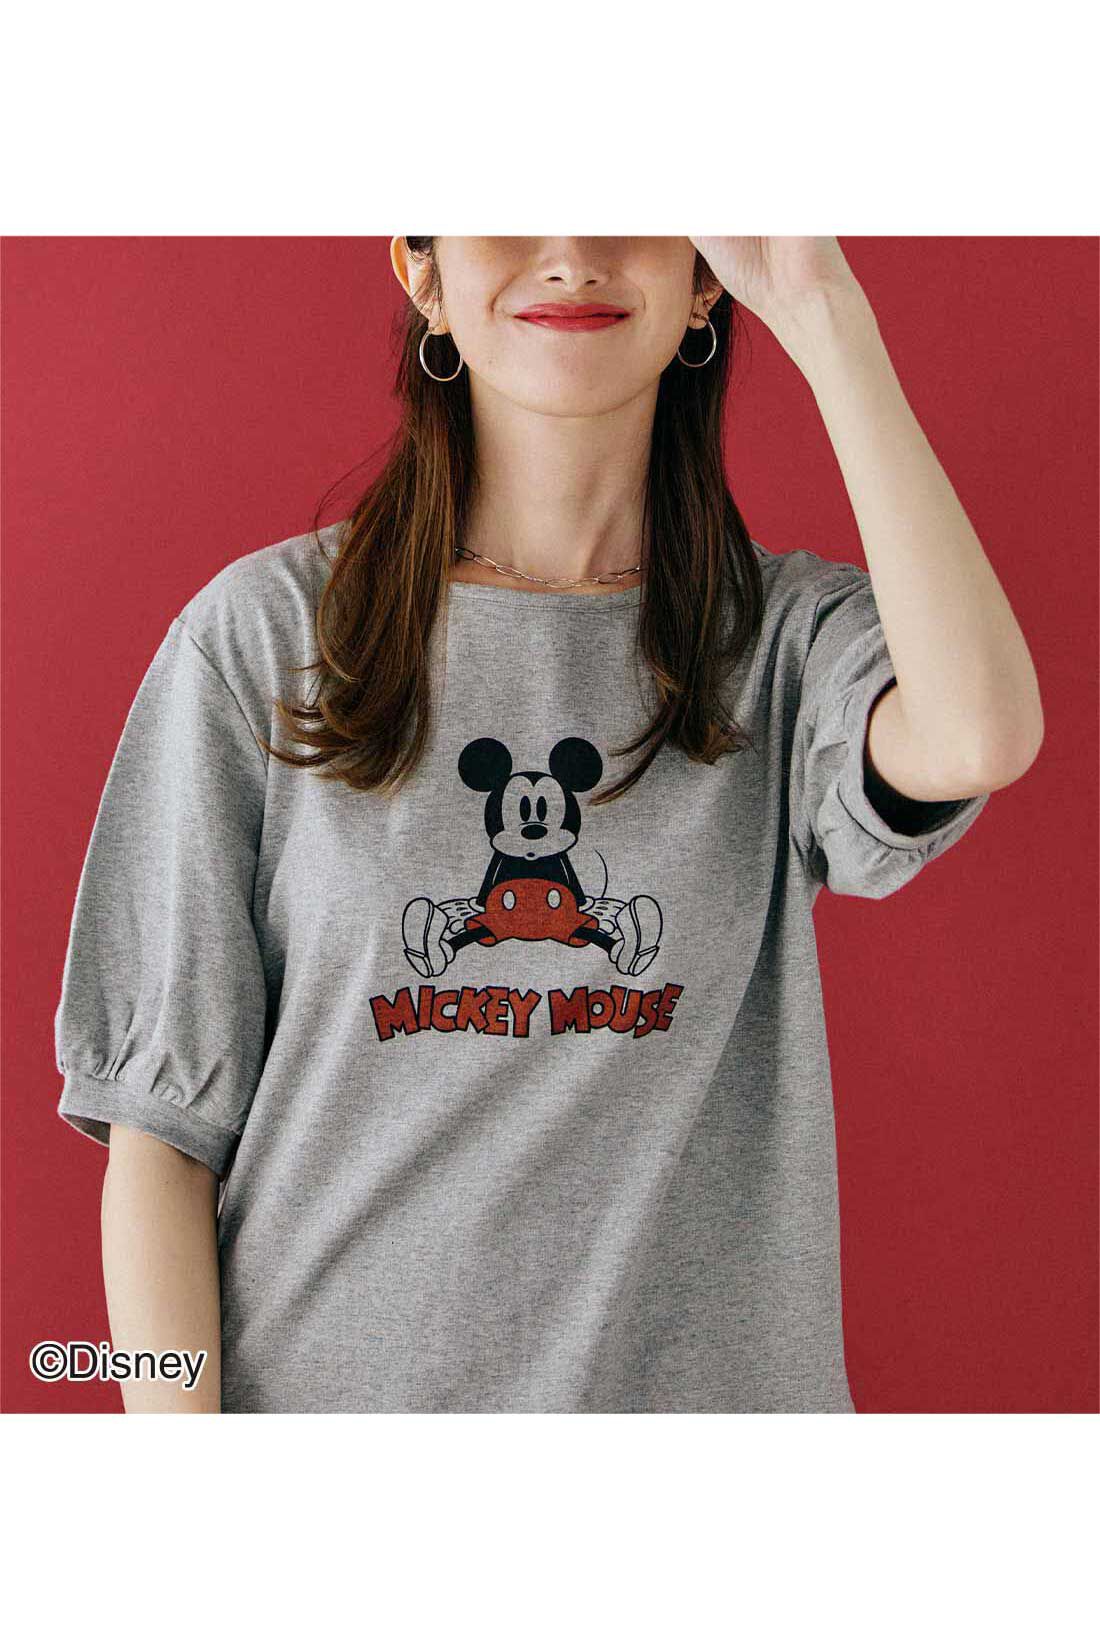 【フォロー割】オールド ミッキーマウス キャラクター Tシャツ 総柄